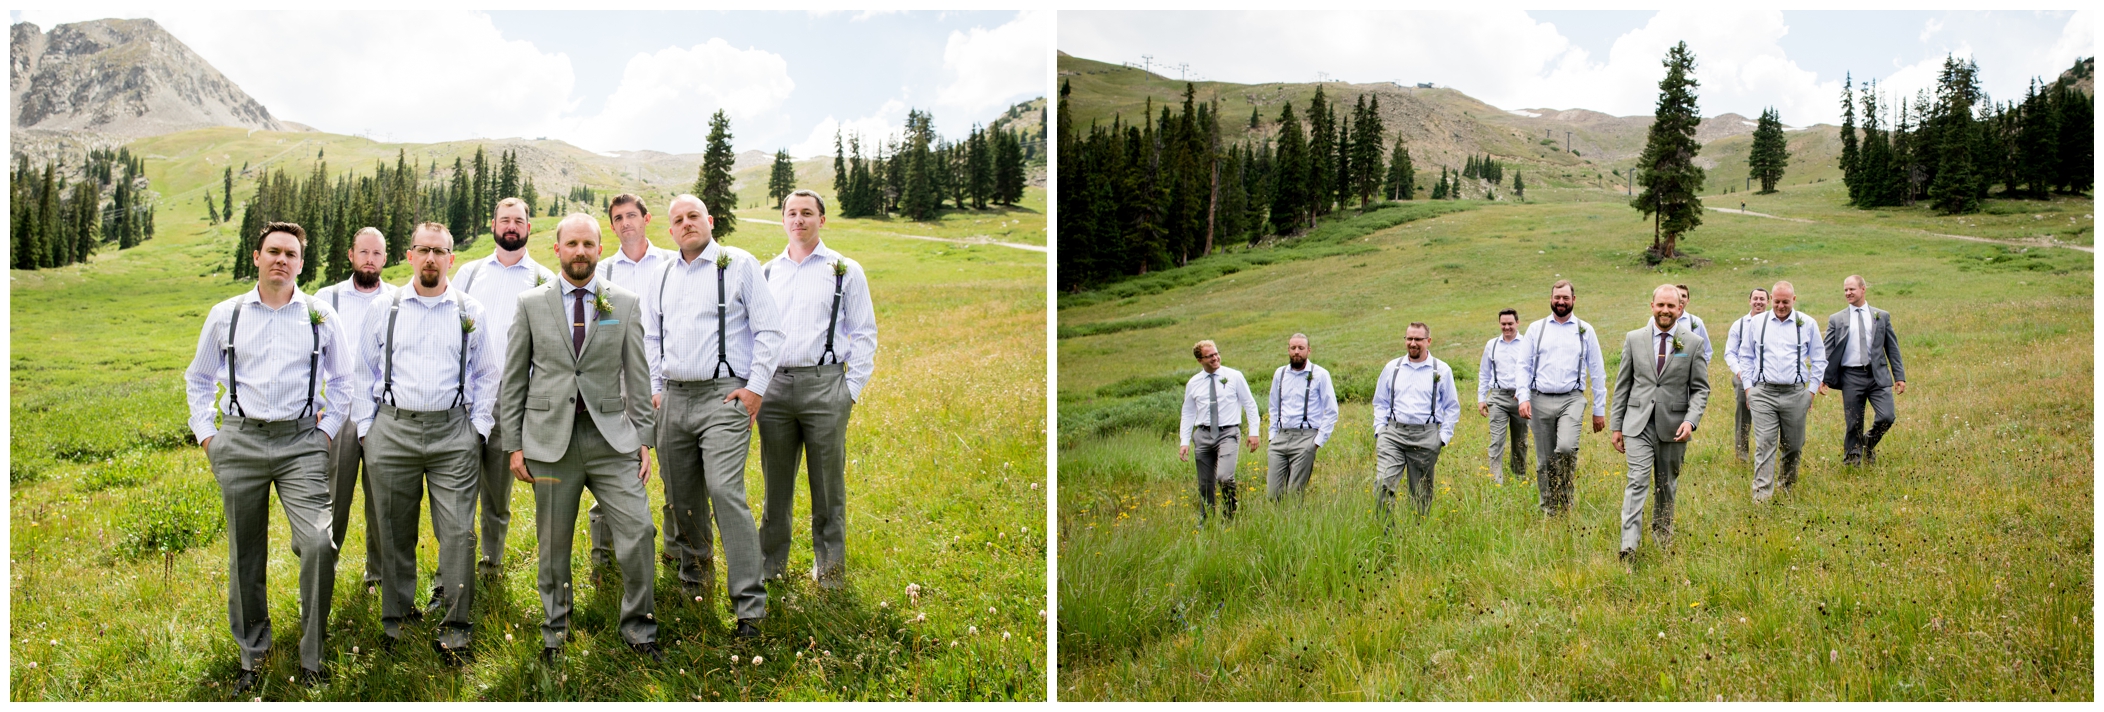 groomsmen in suspenders at Arapahoe Basin Colorado ski resort wedding 